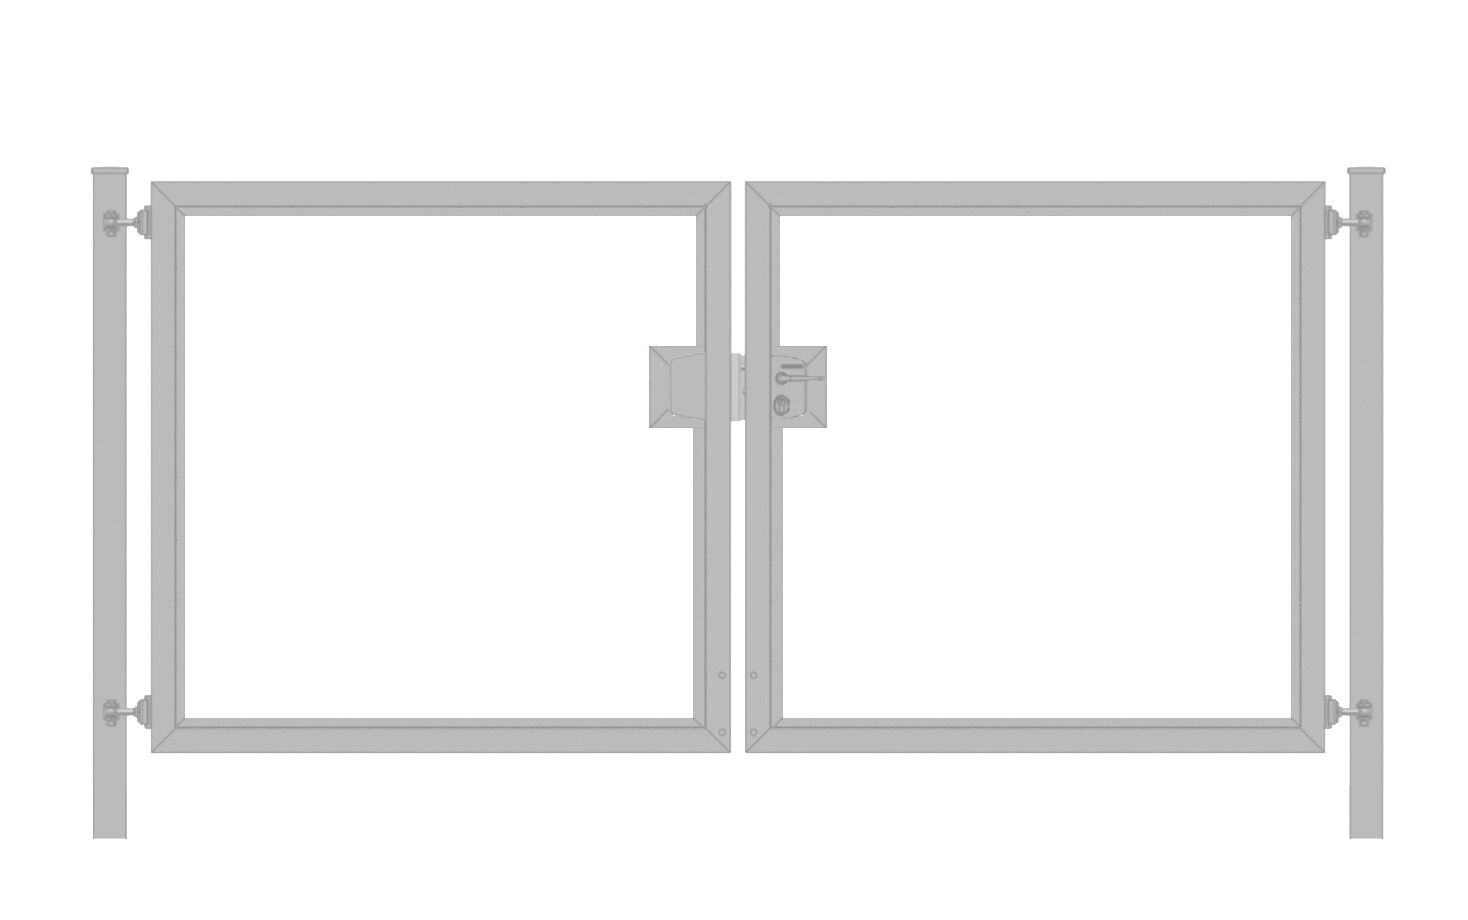 Gartentor / Doppelflügeltor Premium (2-flügelig) symmetrisch für senkrechte Holzfüllung; verzinkt; Breite 200 cm x Höhe 200 cm  